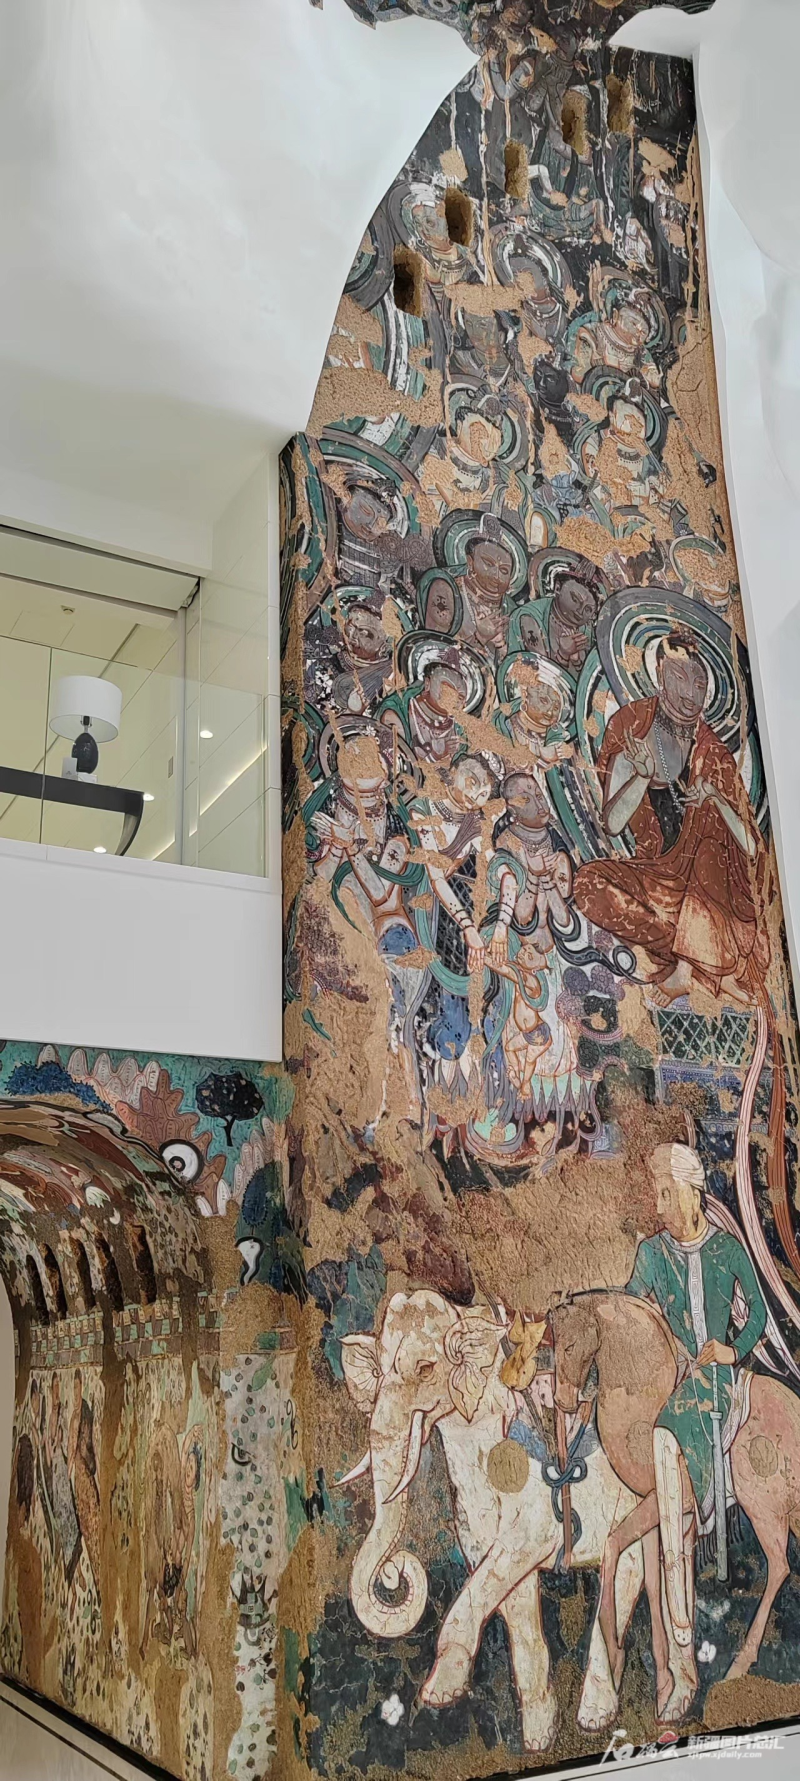 美克洞学馆中的壁画再现了龟兹艺术的厚重与多姿。 石榴云/新疆日报记者 张海峰摄